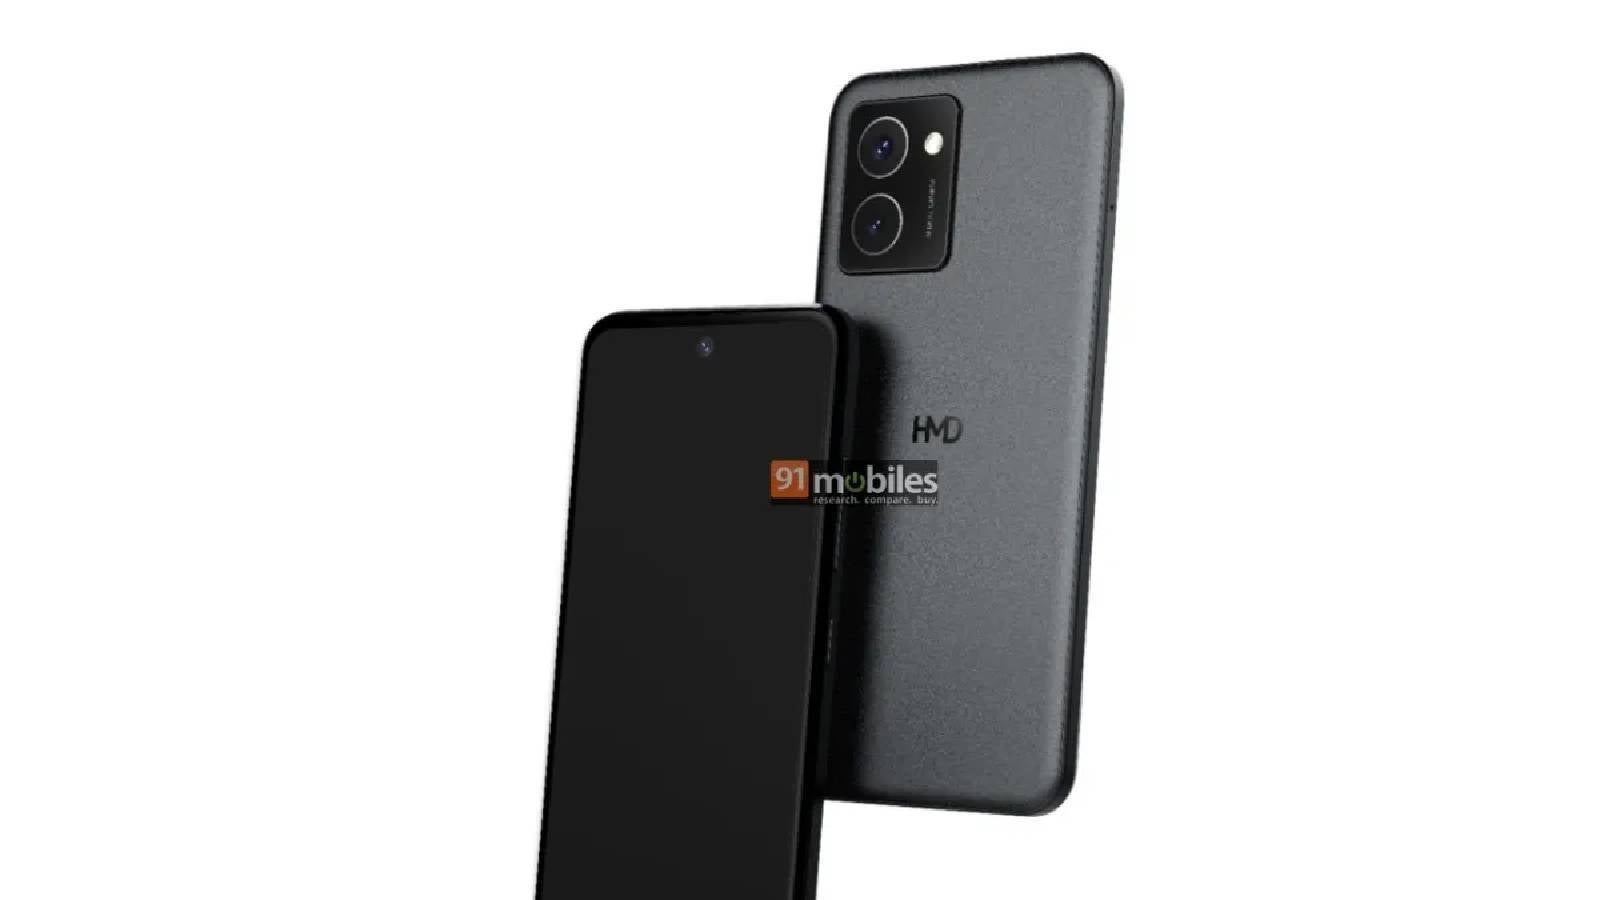 Görünüşe göre ilk HMD markalı telefon ABD'ye gelecek ve görüntü olarak pek de kötü görünmüyor